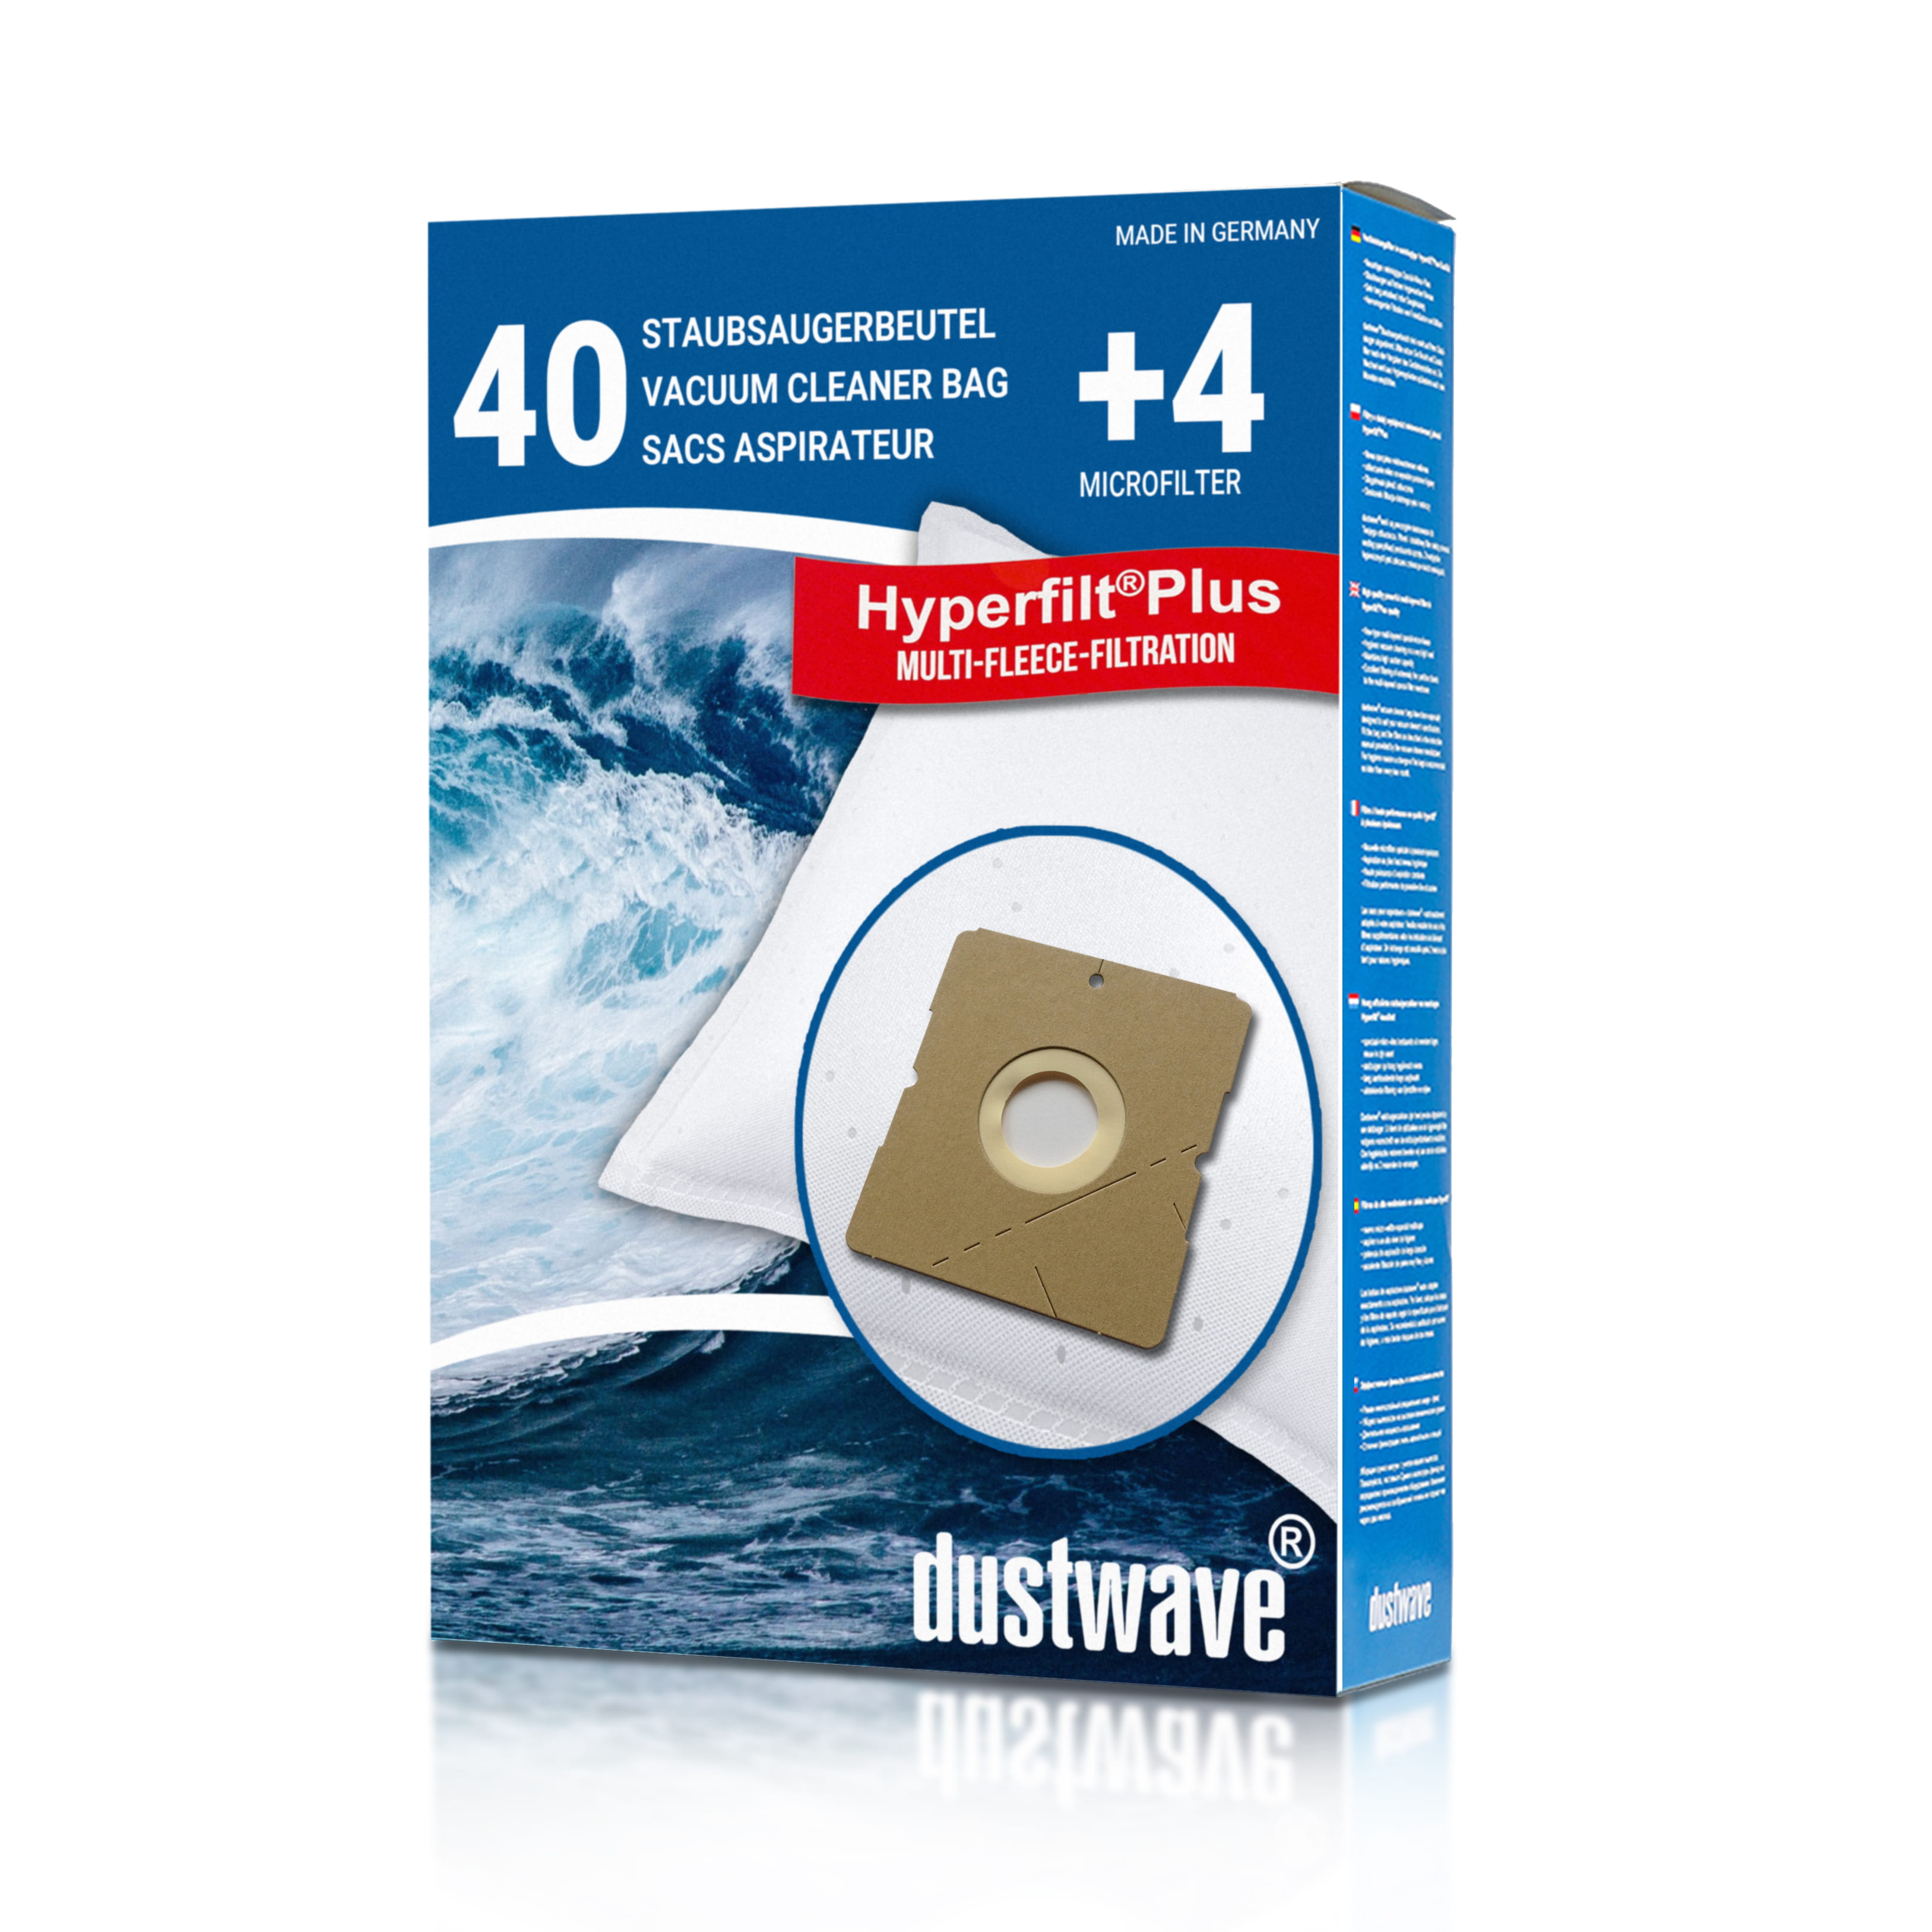 Dustwave® 40 Staubsaugerbeutel für SWIRL Y 12 - hocheffizient, mehrlagiges Mikrovlies mit Hygieneverschluss - Made in Germany